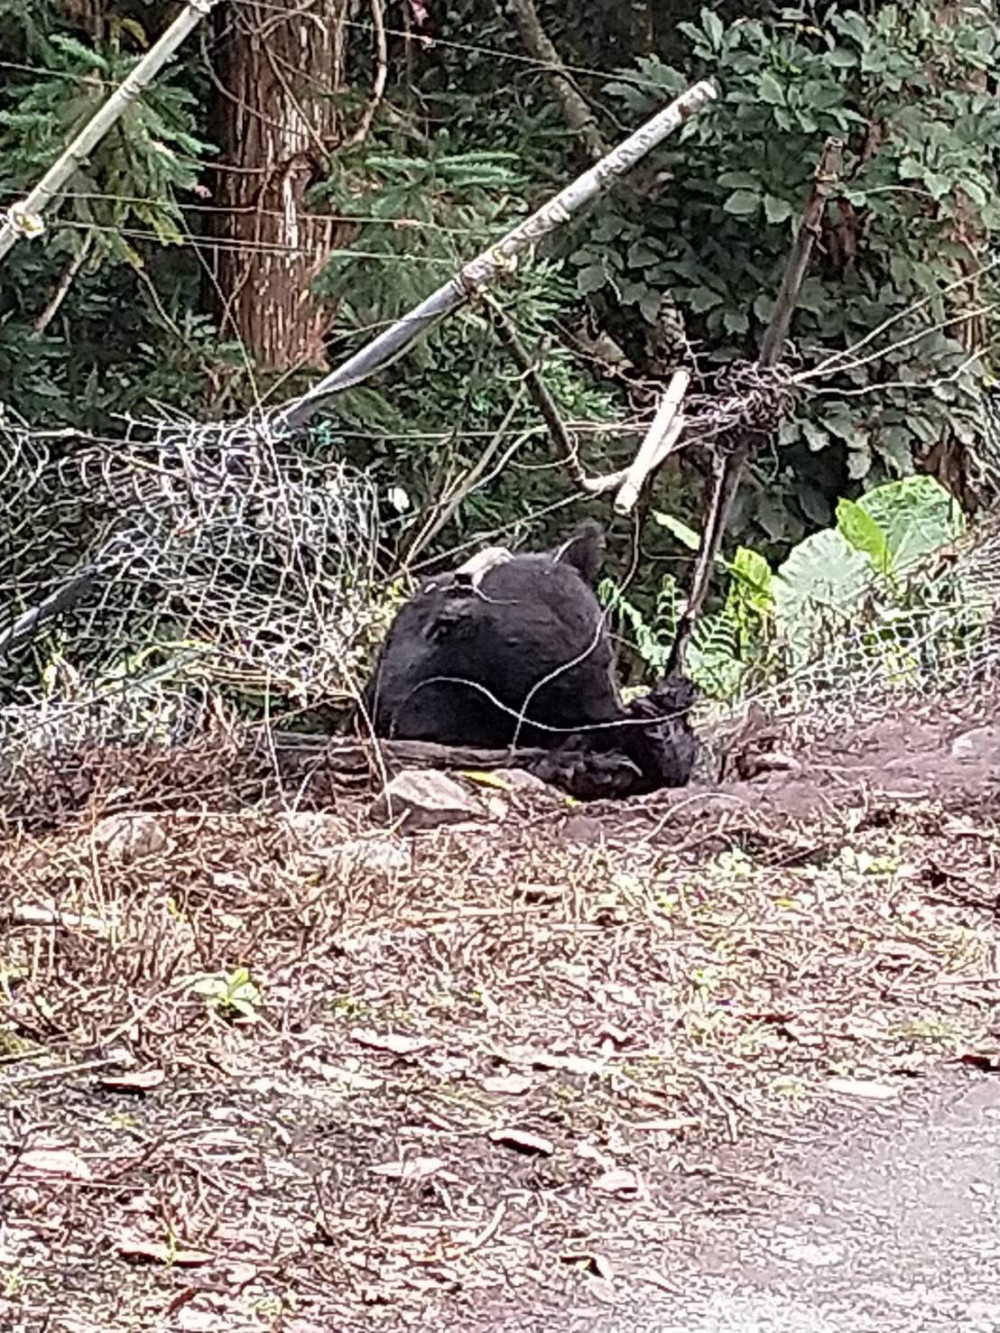 套索加槍傷 救傷崁頂小黑熊僅能以流質進食 人熊如何共存引議 窩窩 專注為動物發聲的獨立媒體